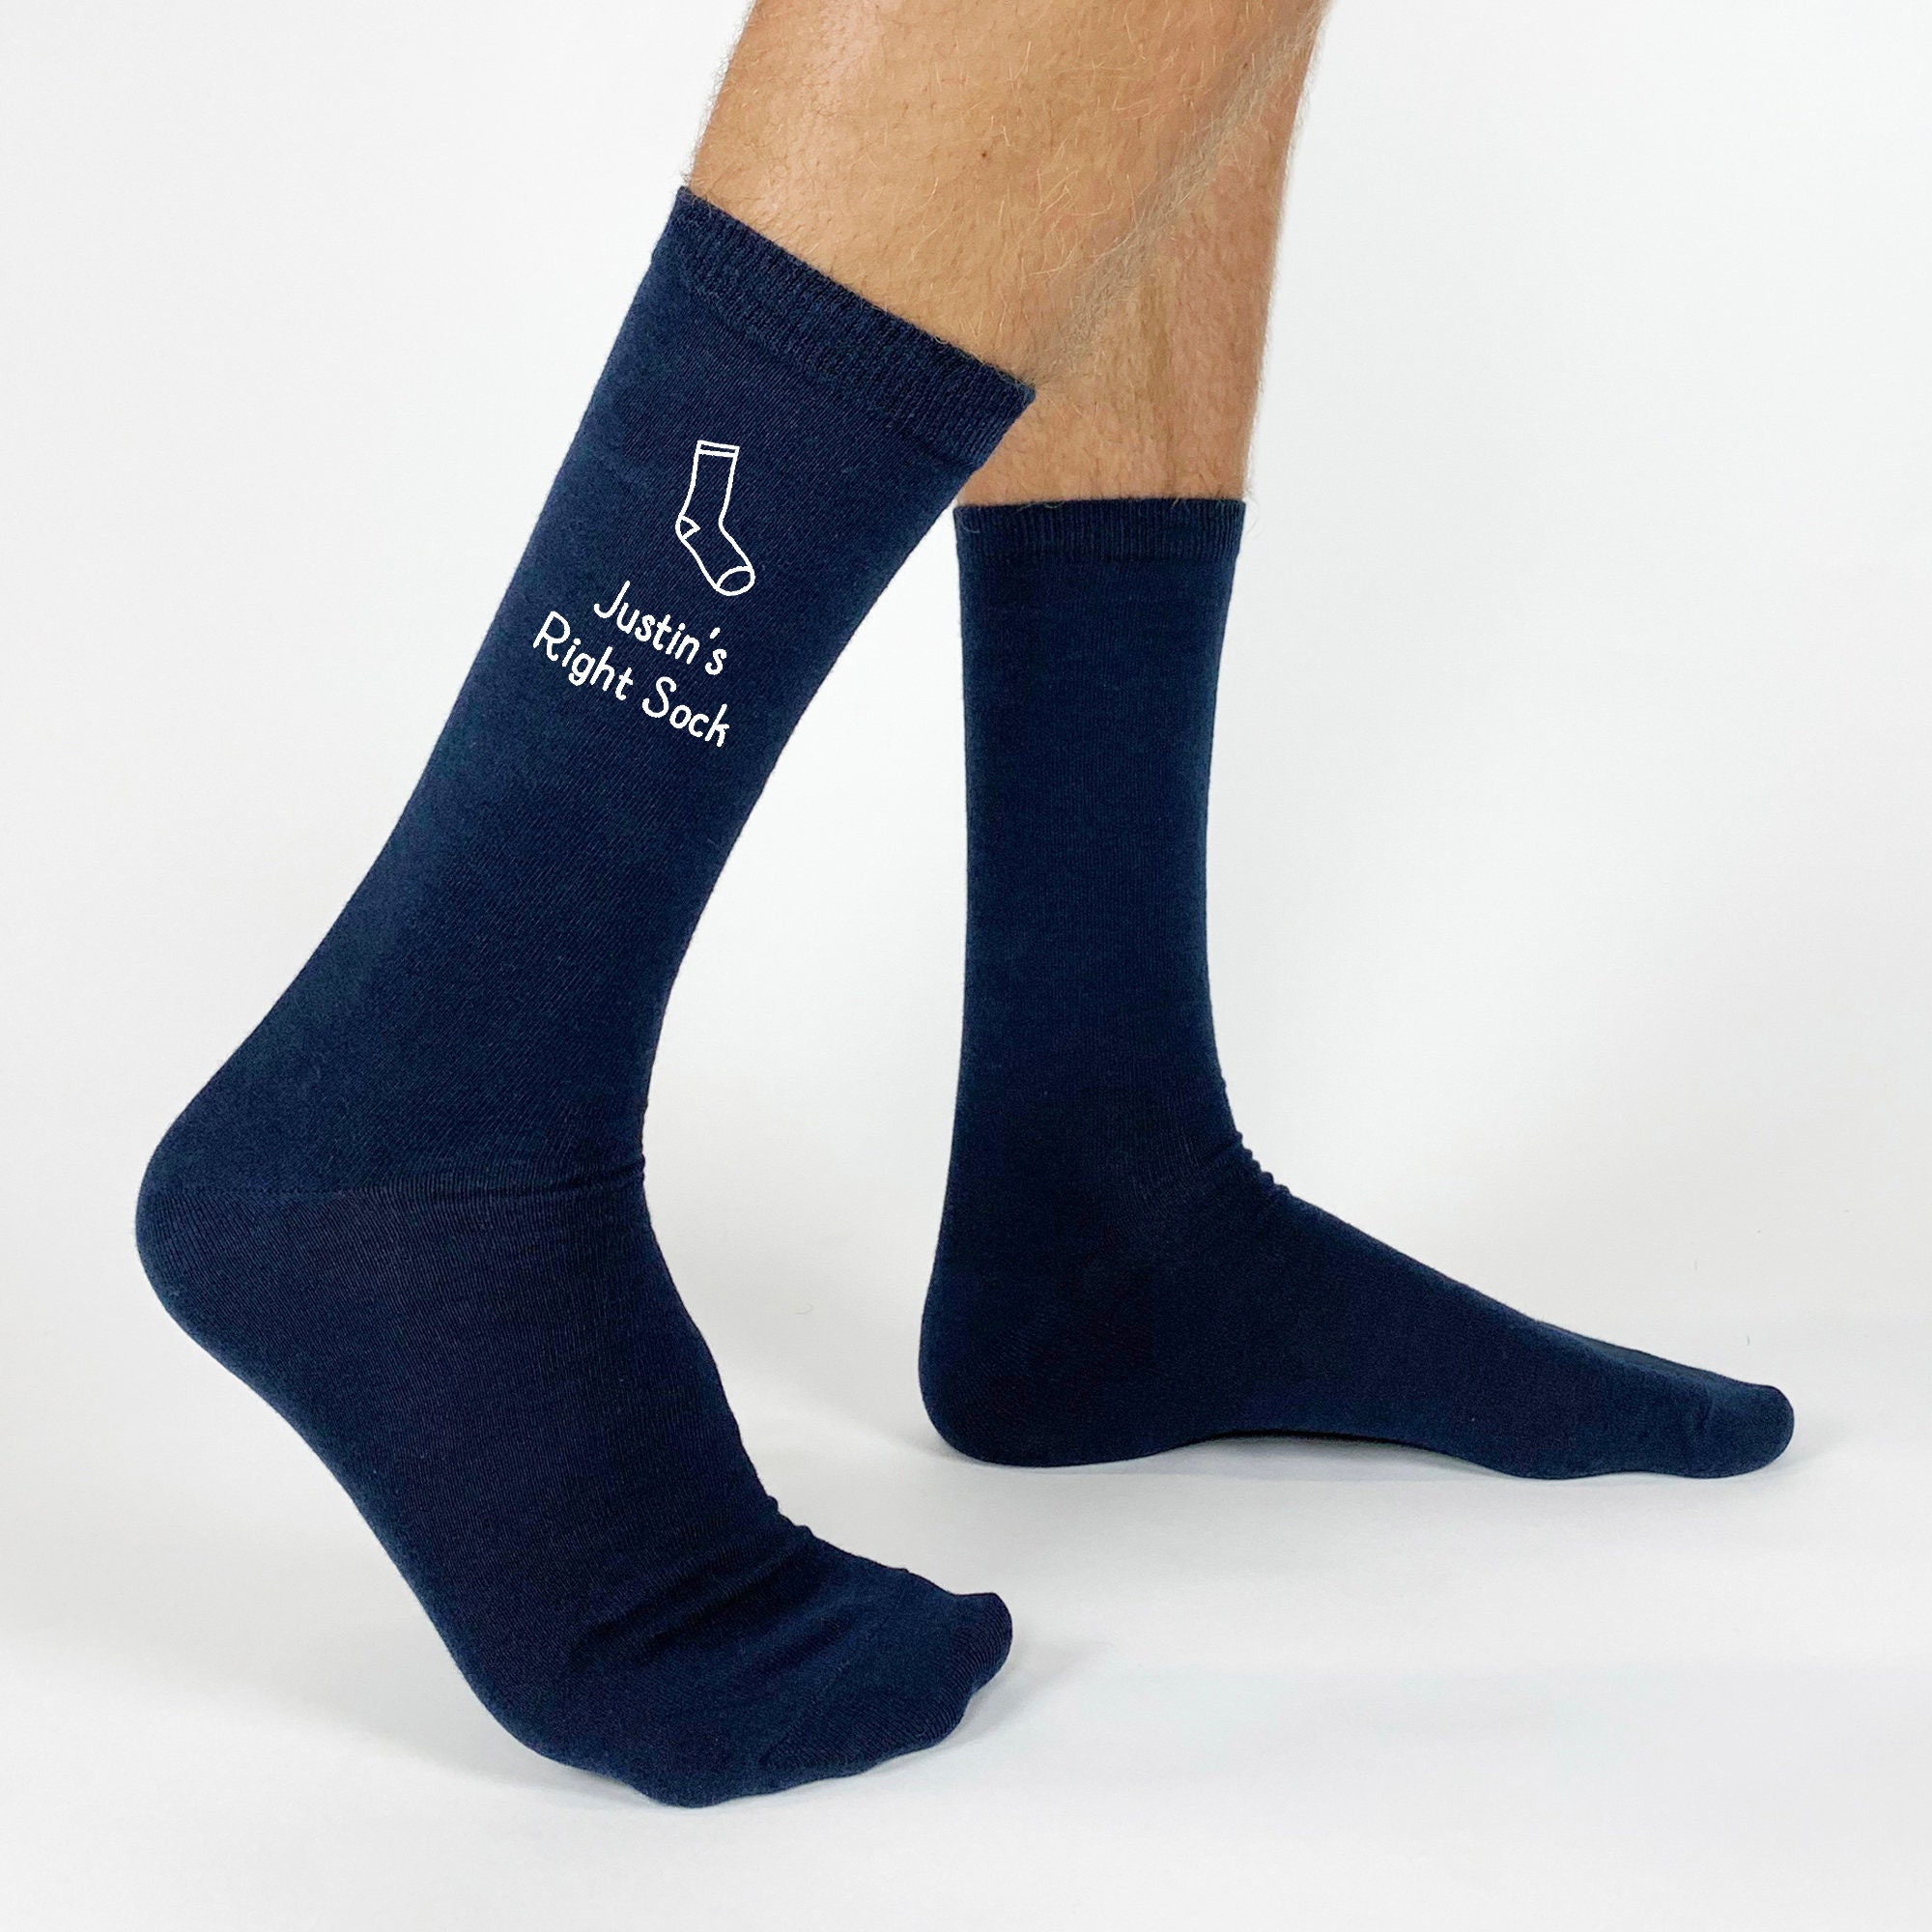 Chaussettes à slogan personnalisées Boîte-cadeau de chaussettes  personnalisées uniques pour lui Votre texte -  France